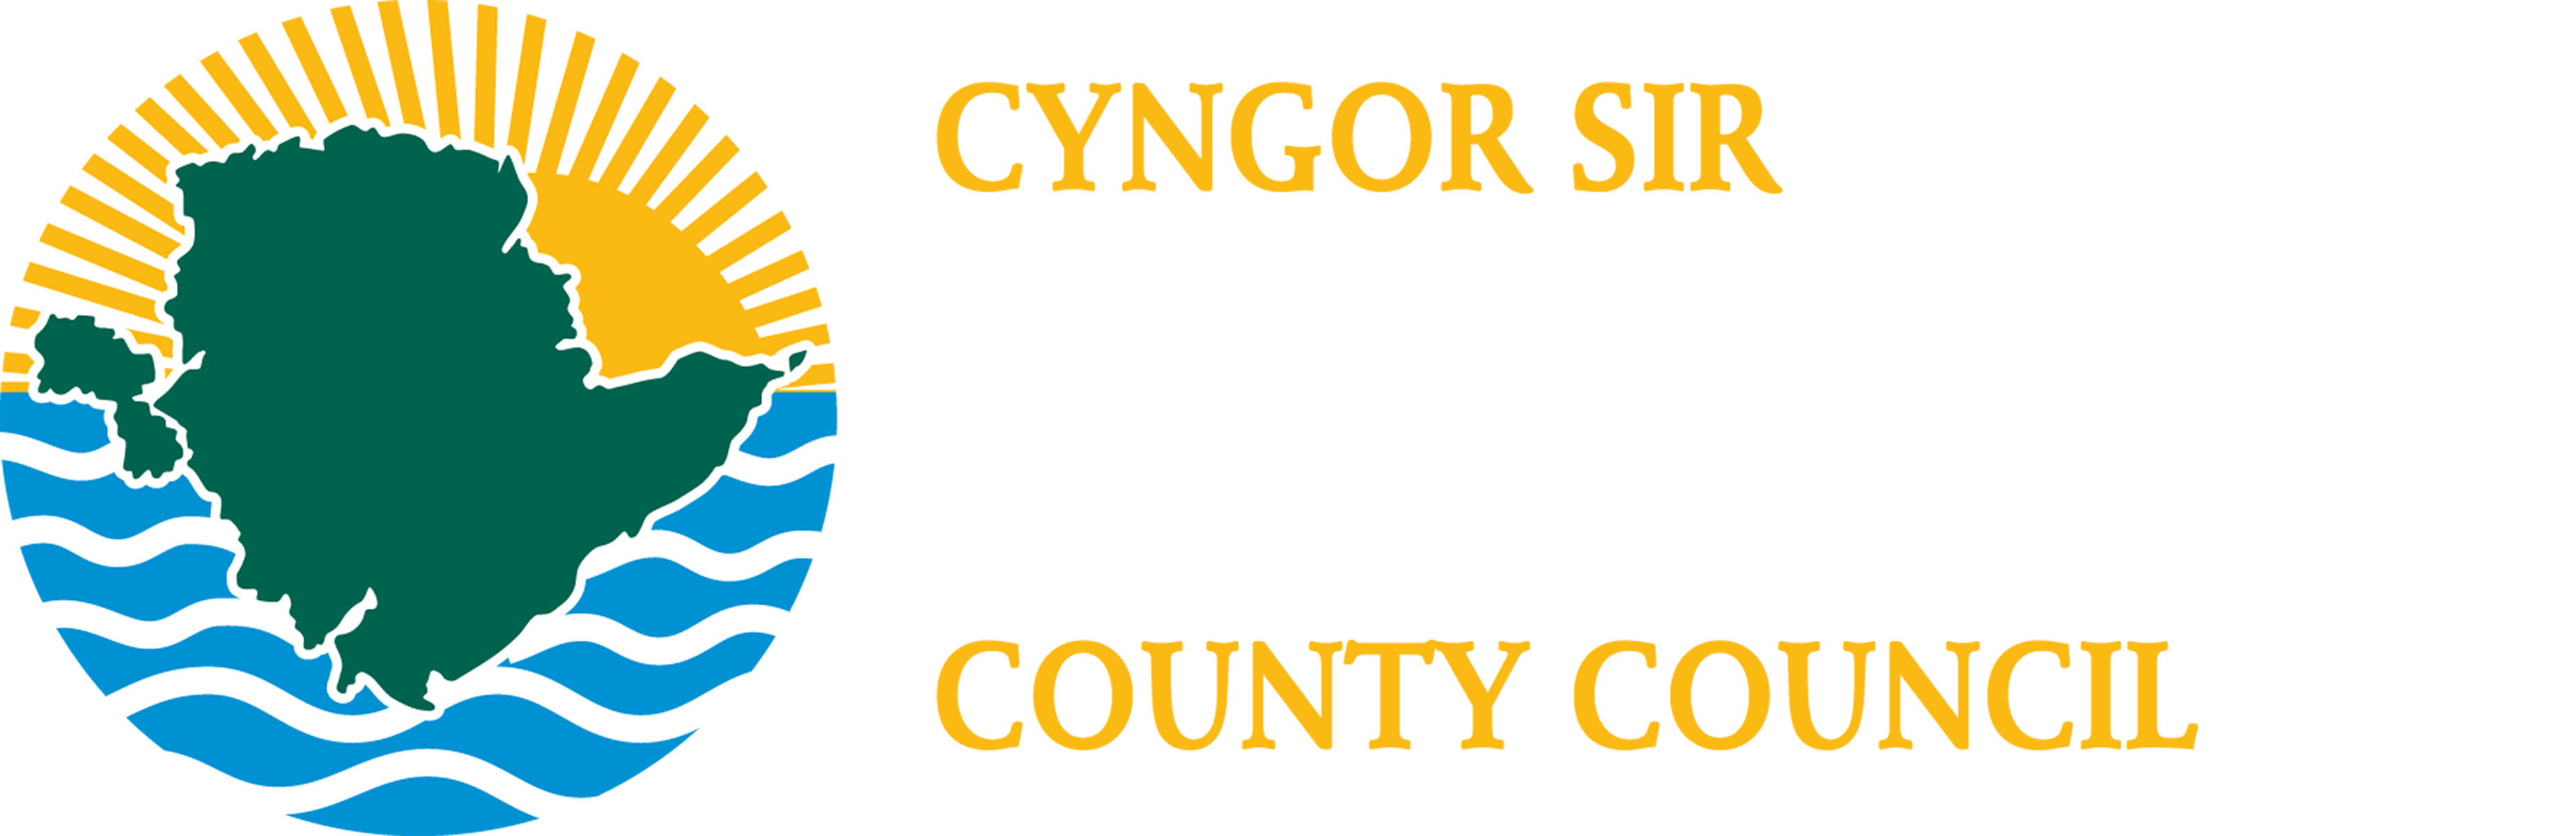 Ynysmon 3 logo